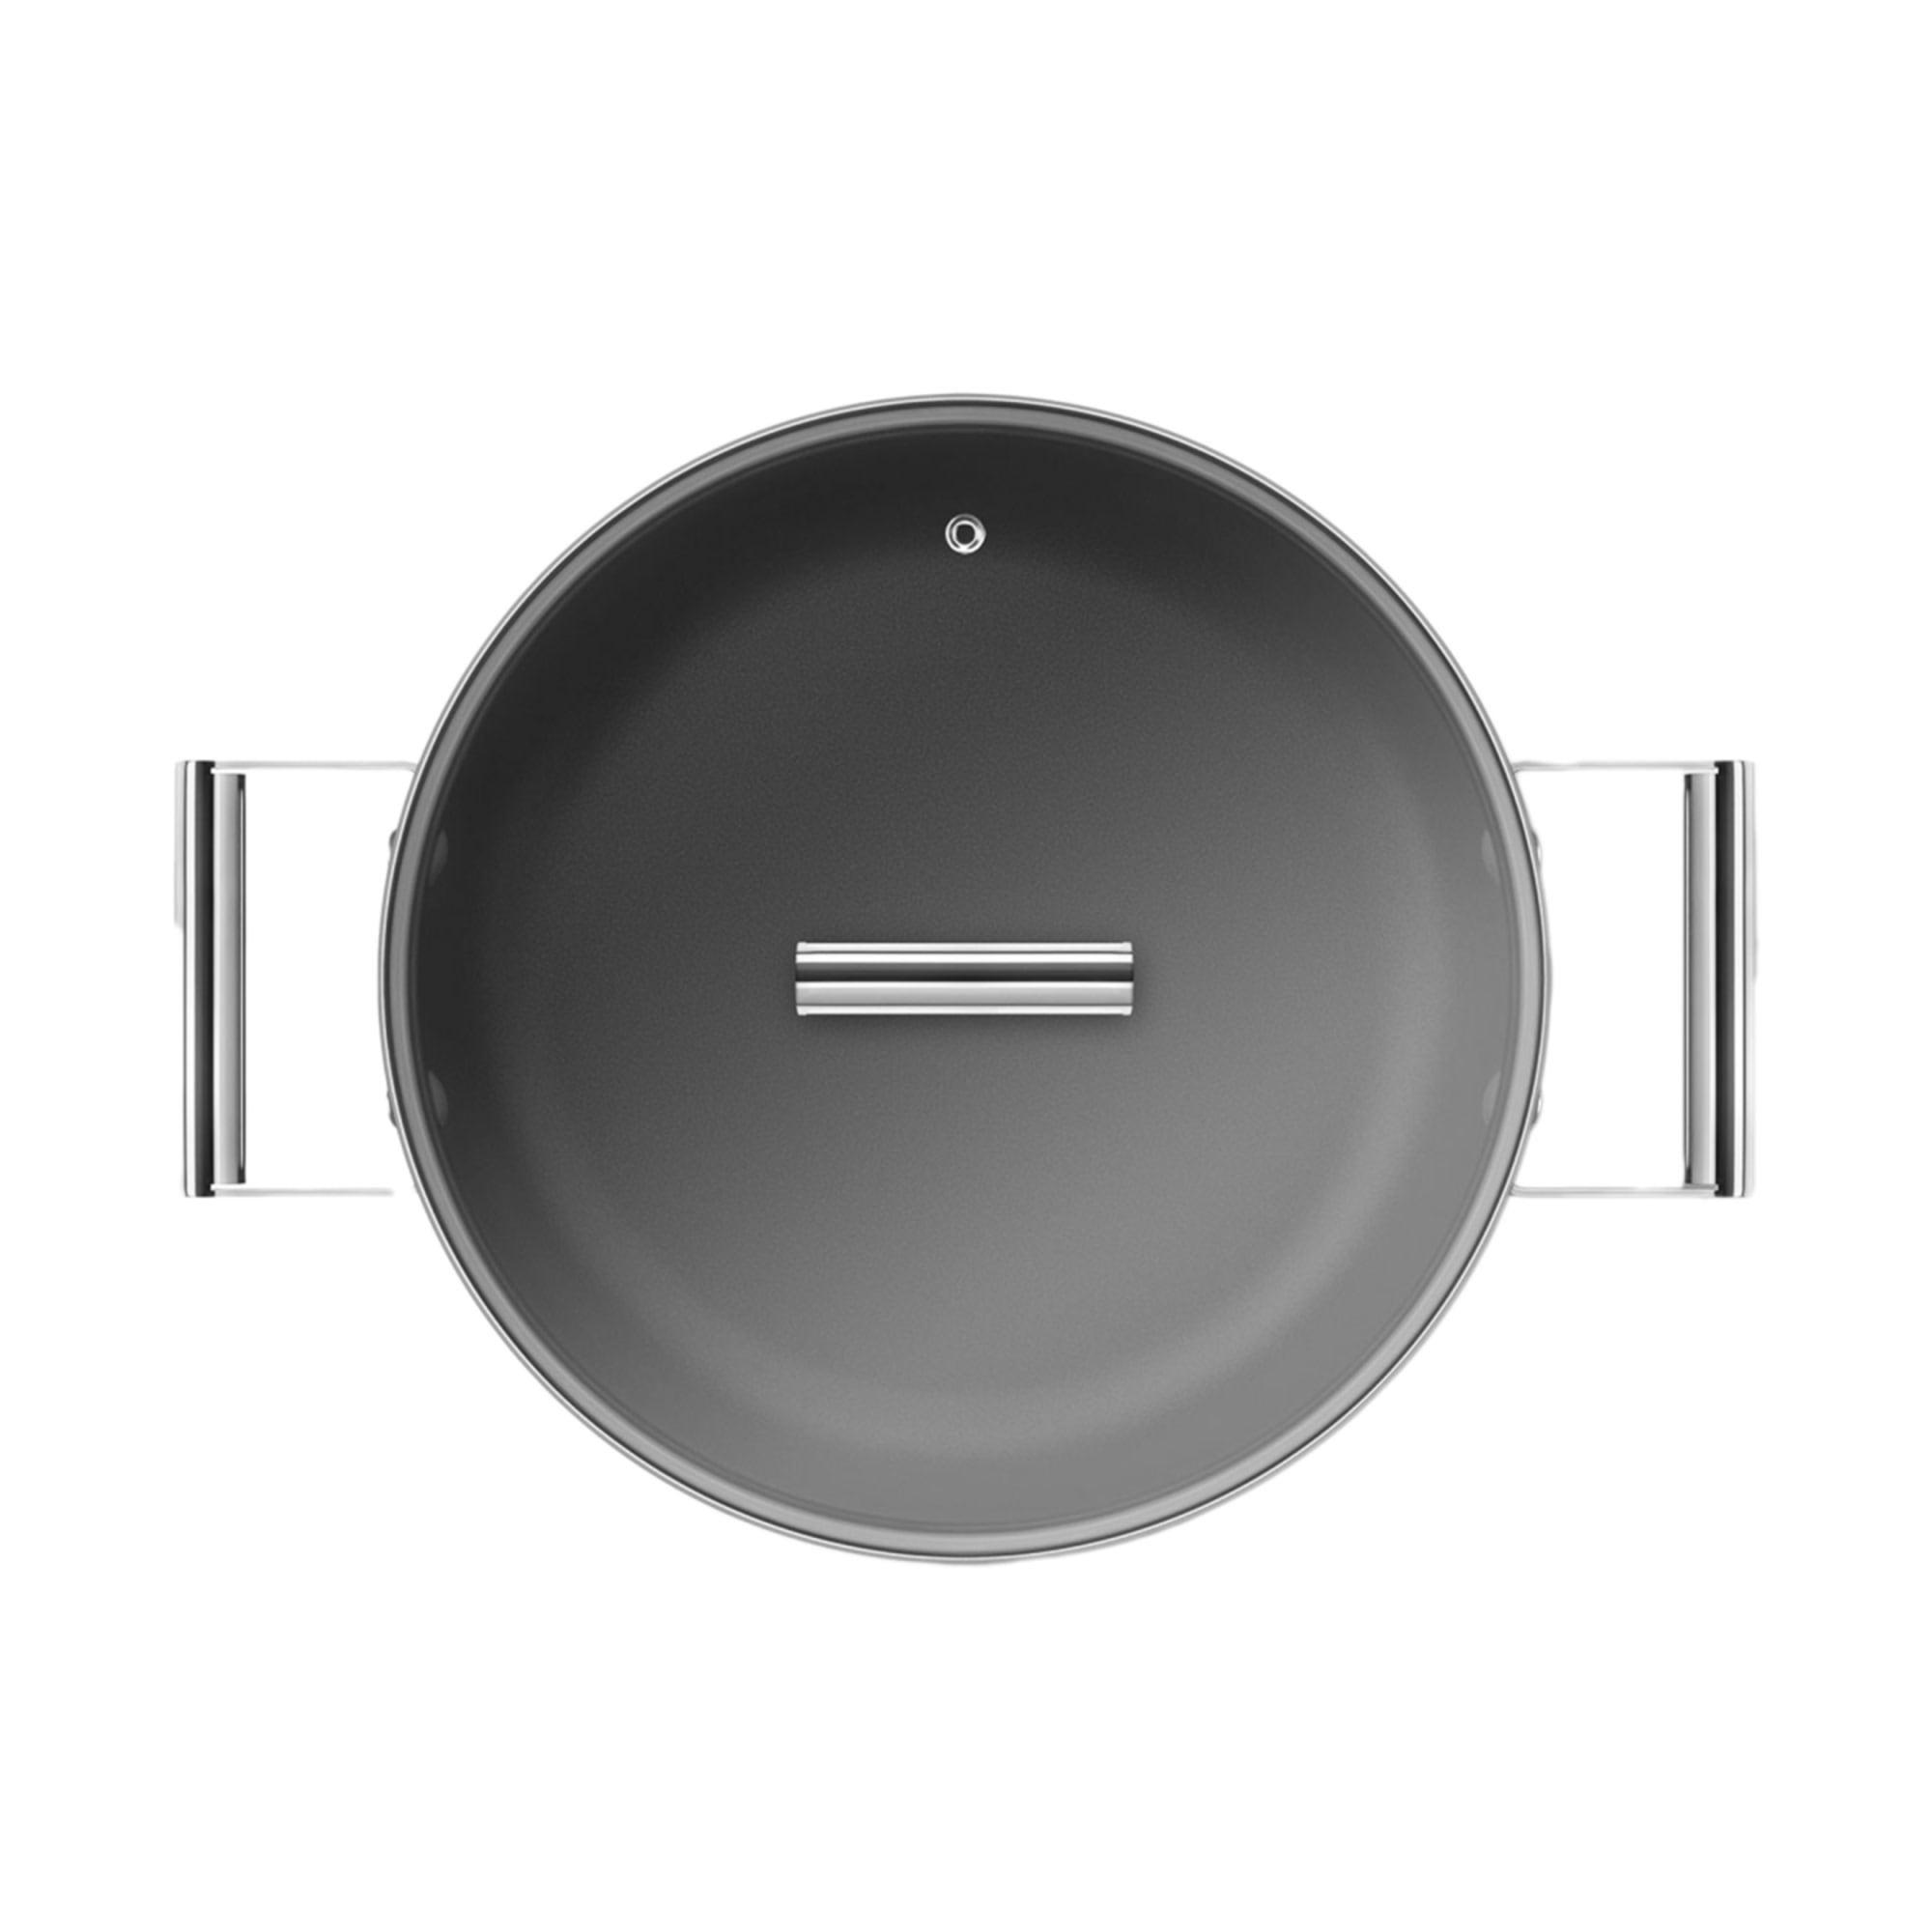 Smeg Non Stick Chef's Pan with Lid 28cm - 3.7L Black Image 11